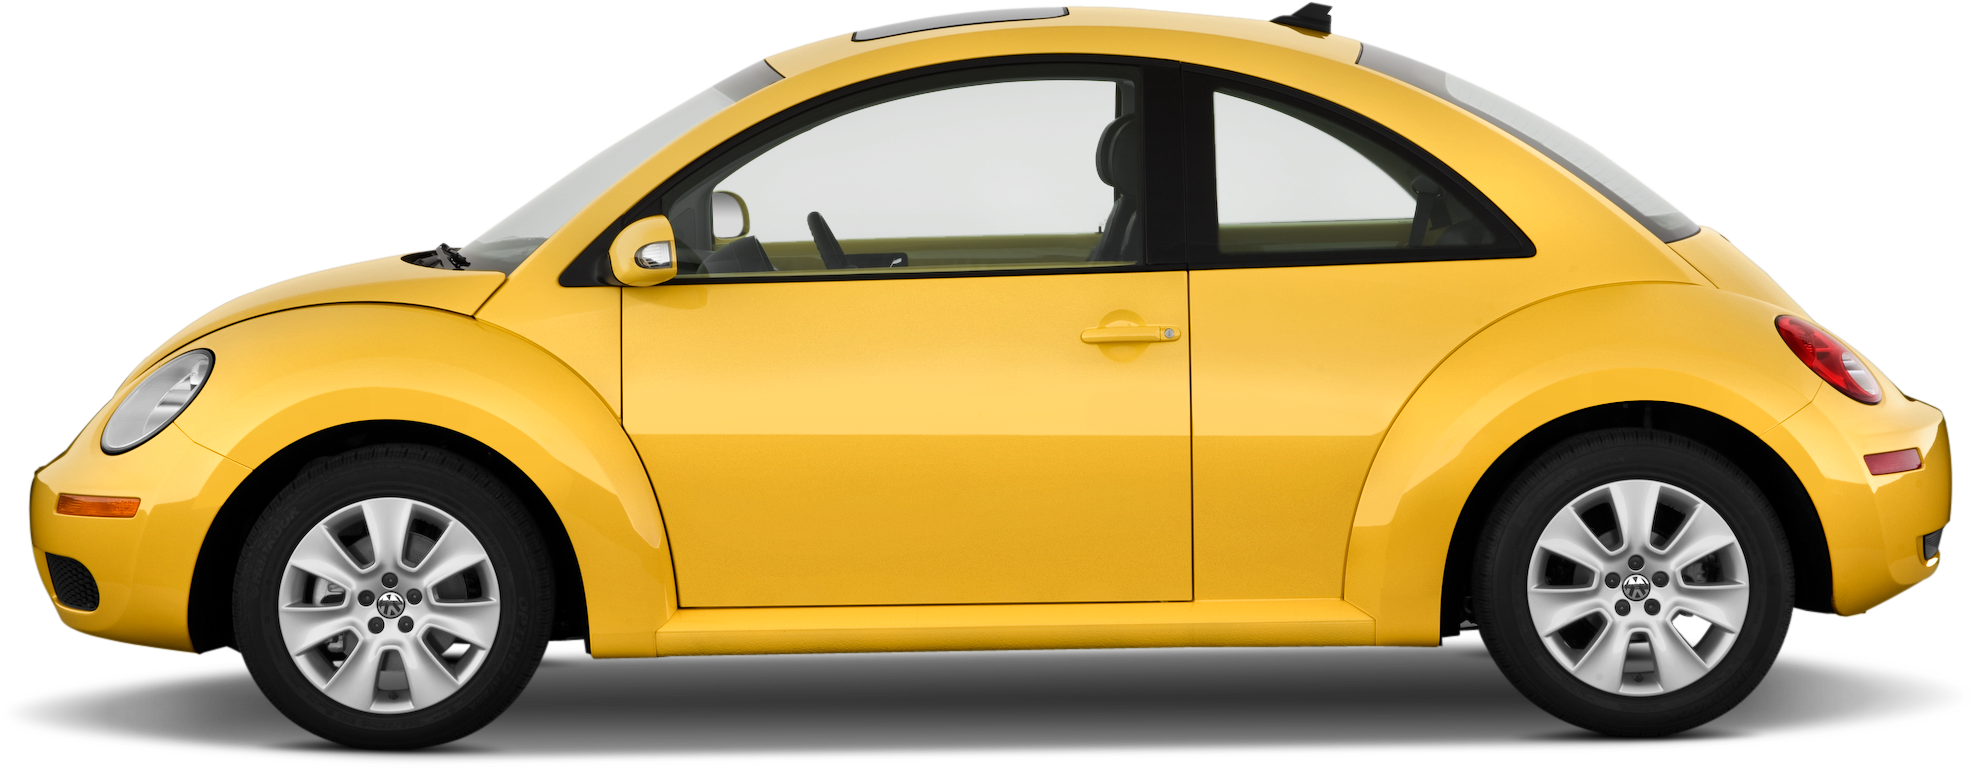 Volkswagen Beetle Background PNG Image